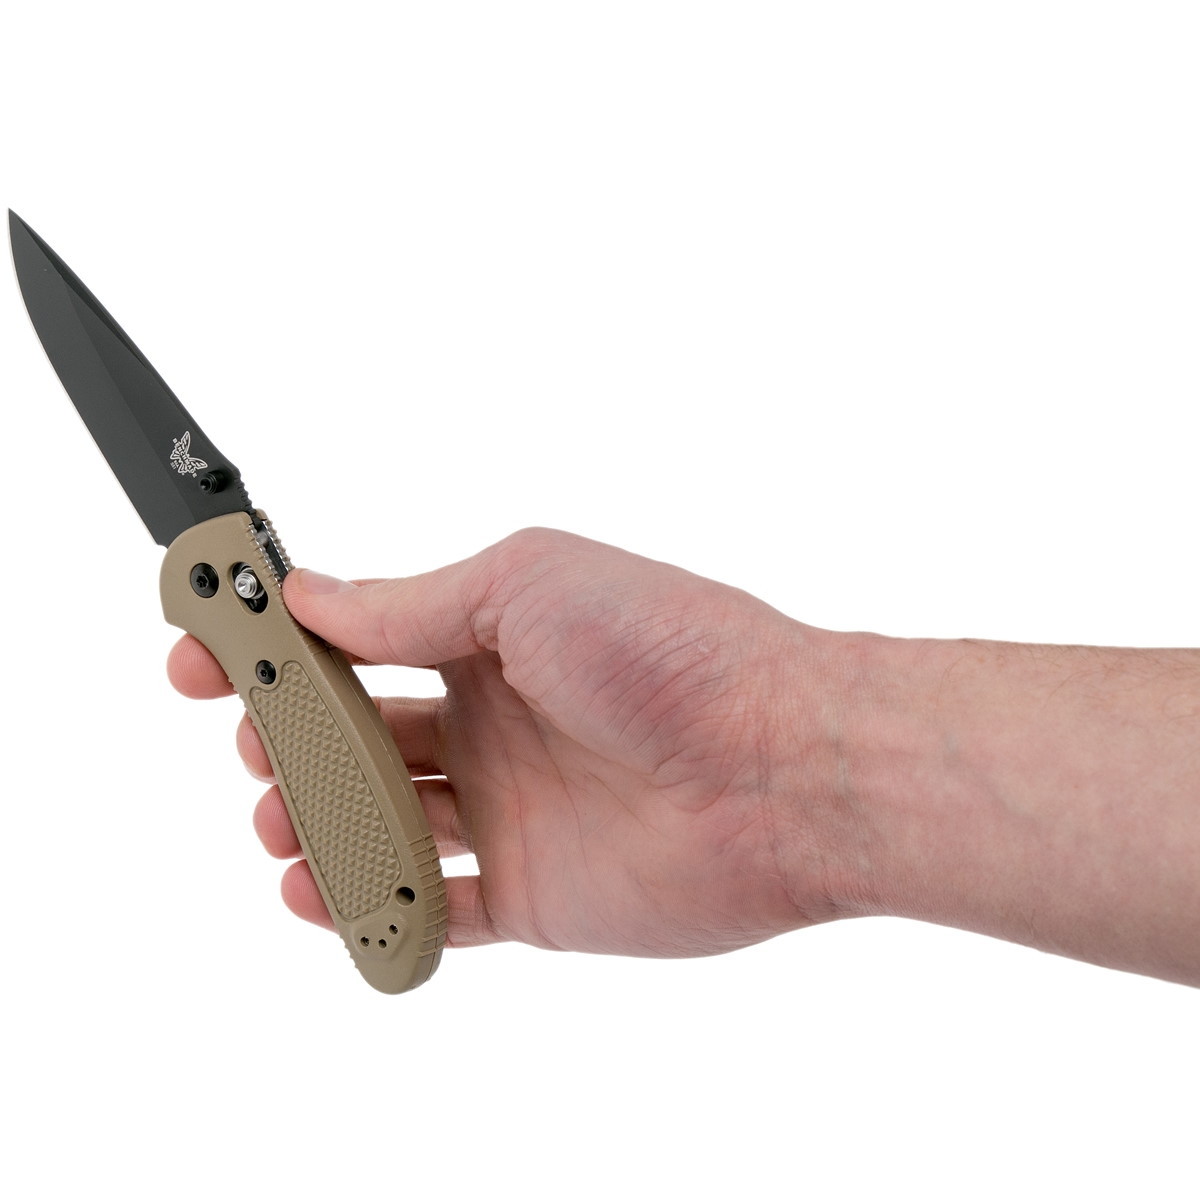 Складной нож Benchmade Griptilian, сталь S30V, рукоять бежевый нейлон - фото 9